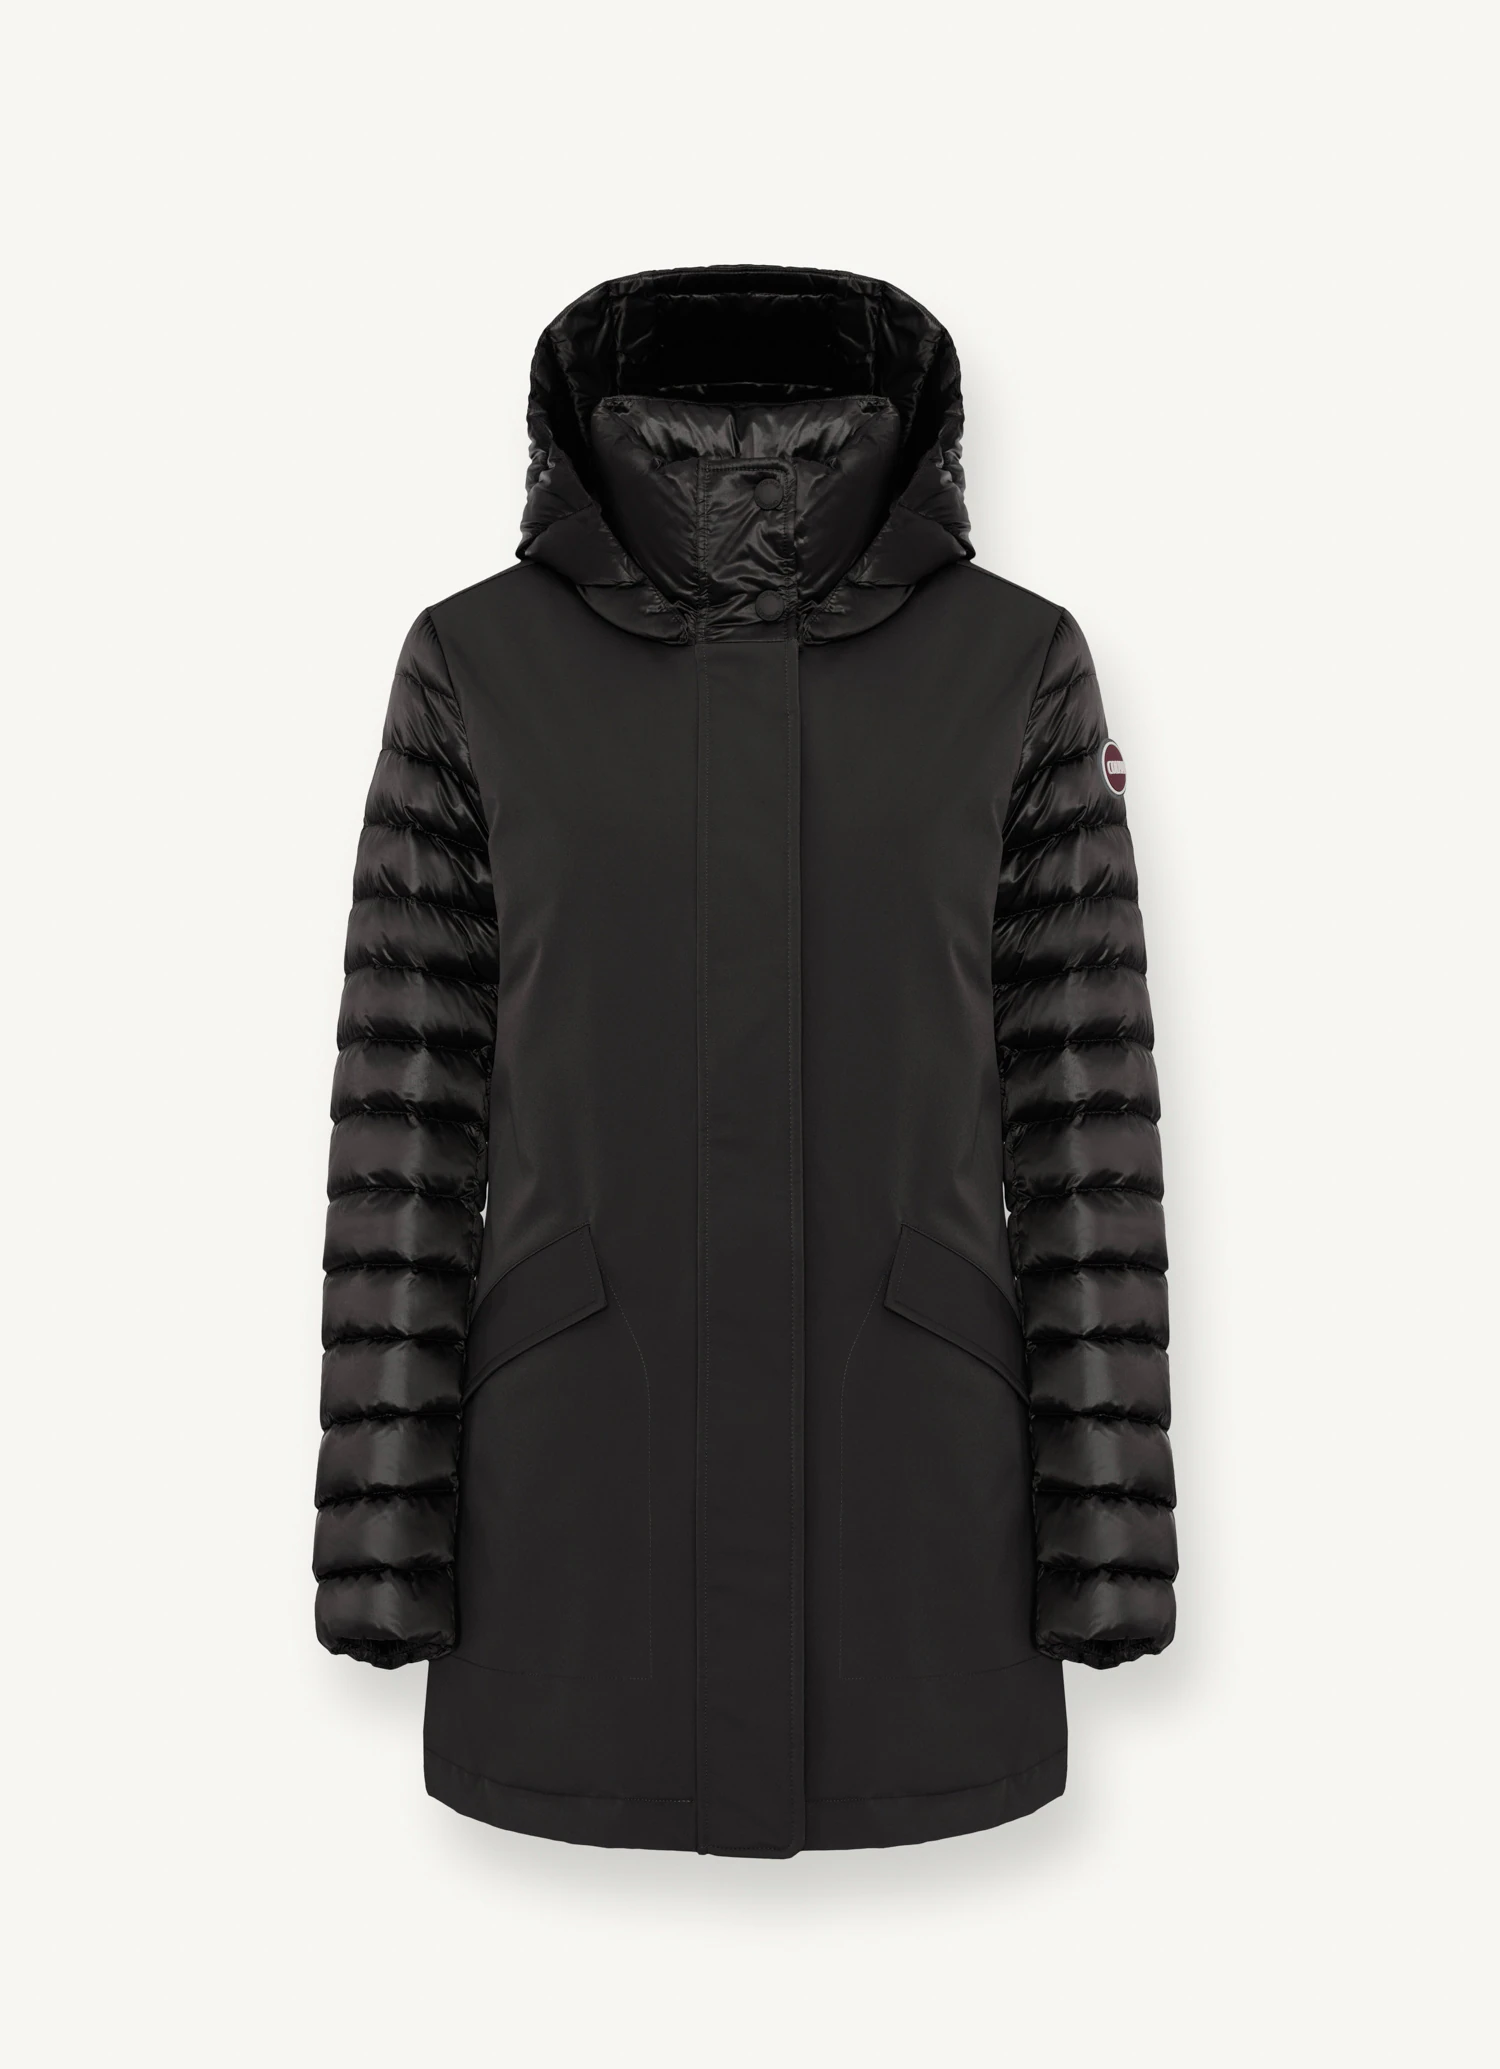 Si solo pudiéramos comprarnos un abrigo este invierno, sería la chaqueta  impermeable con capucha que nos pondremos hoy y siempre